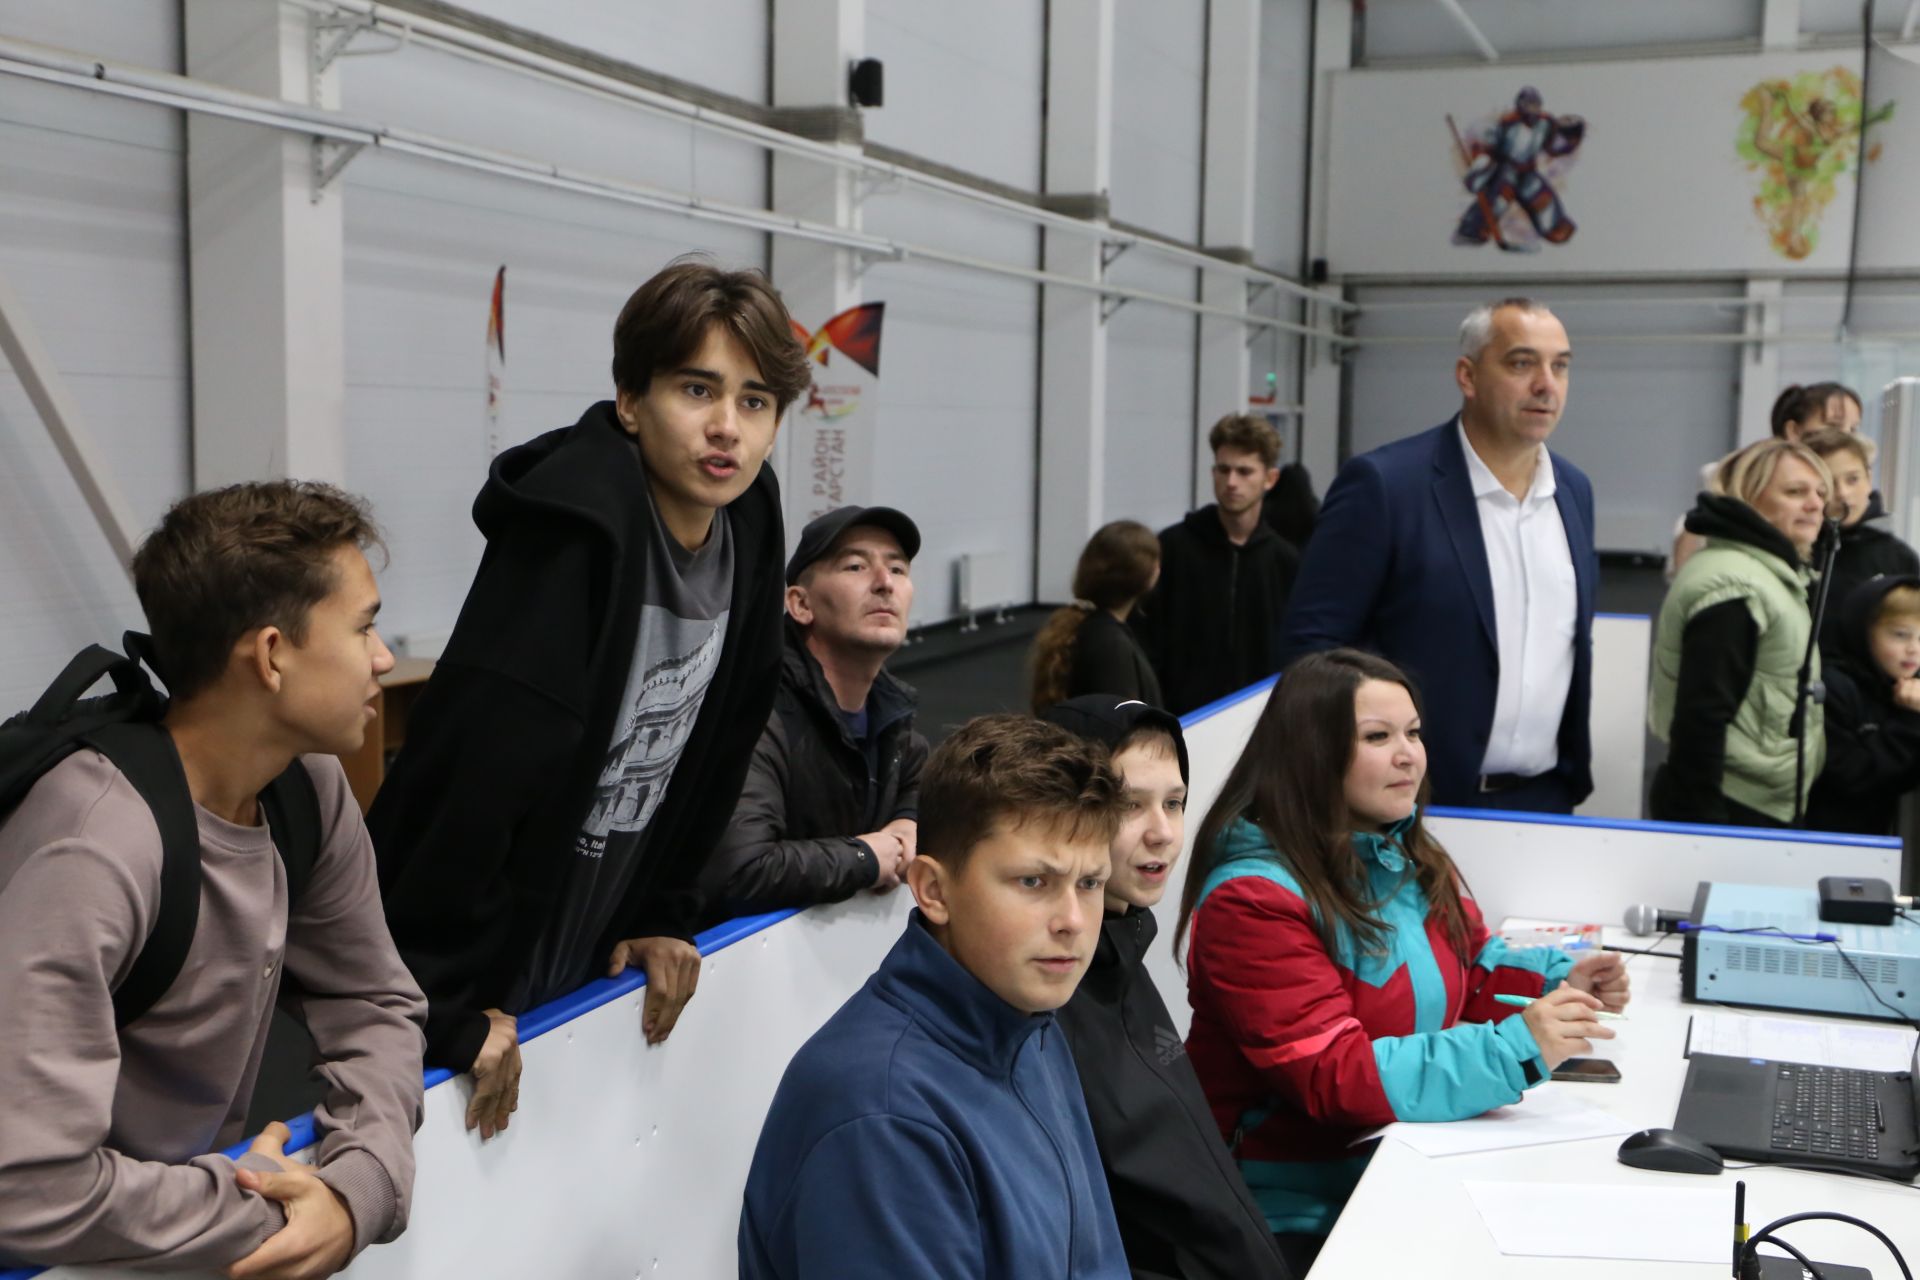 Алексеевские хоккеисты разгромили соперника в матче-открытии турнира на Кубок «Элгрант»